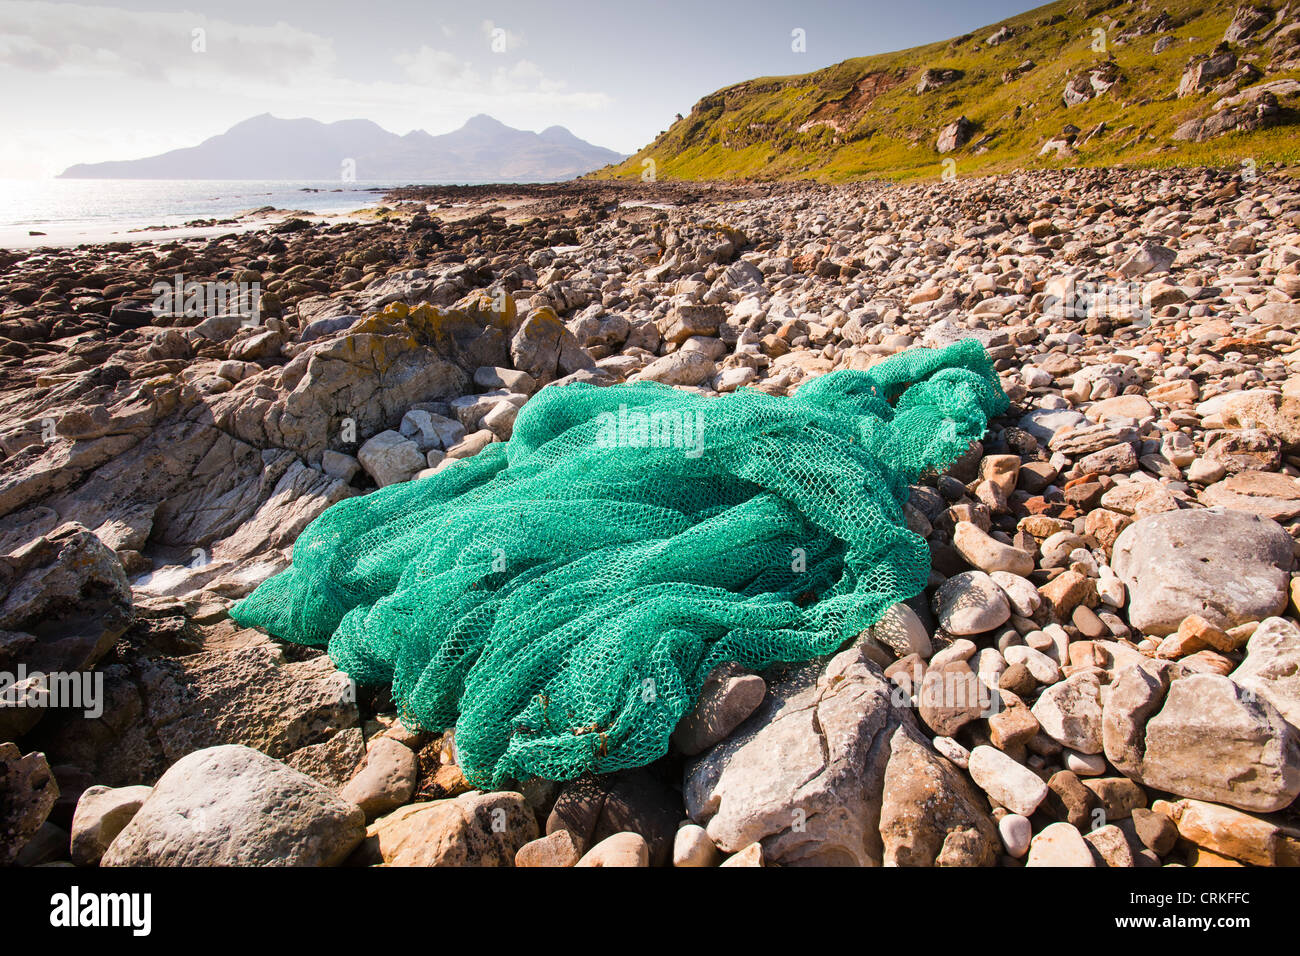 Un filet de pêche échoués à l'Singing Sands sur la côte ouest de l'île de Eigg, Ecosse, Royaume-Uni. Banque D'Images